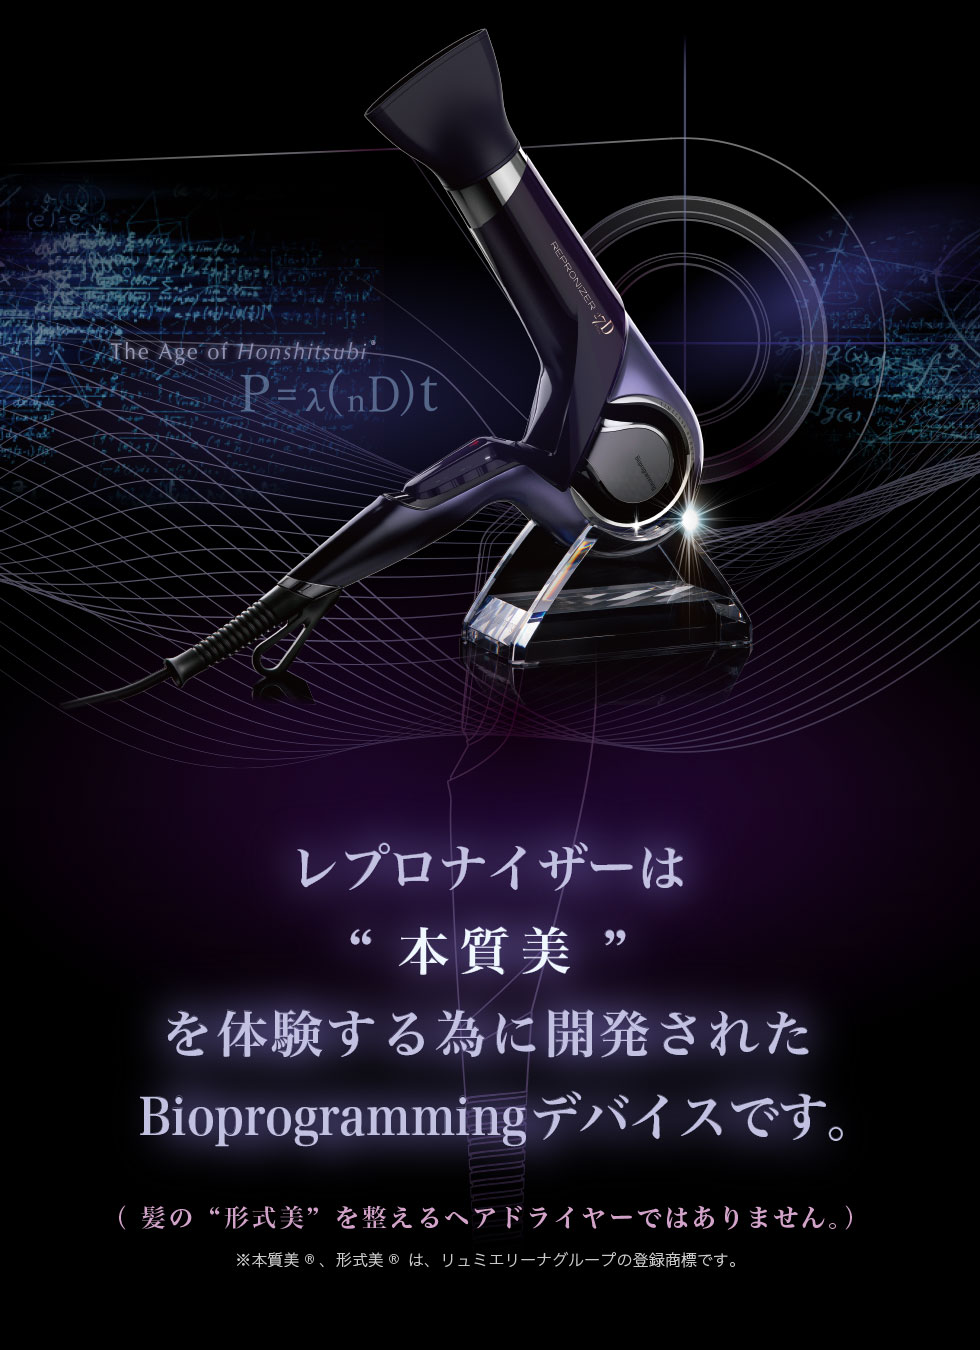 レプロナイザー 27D Plus | Bioprogramming Club